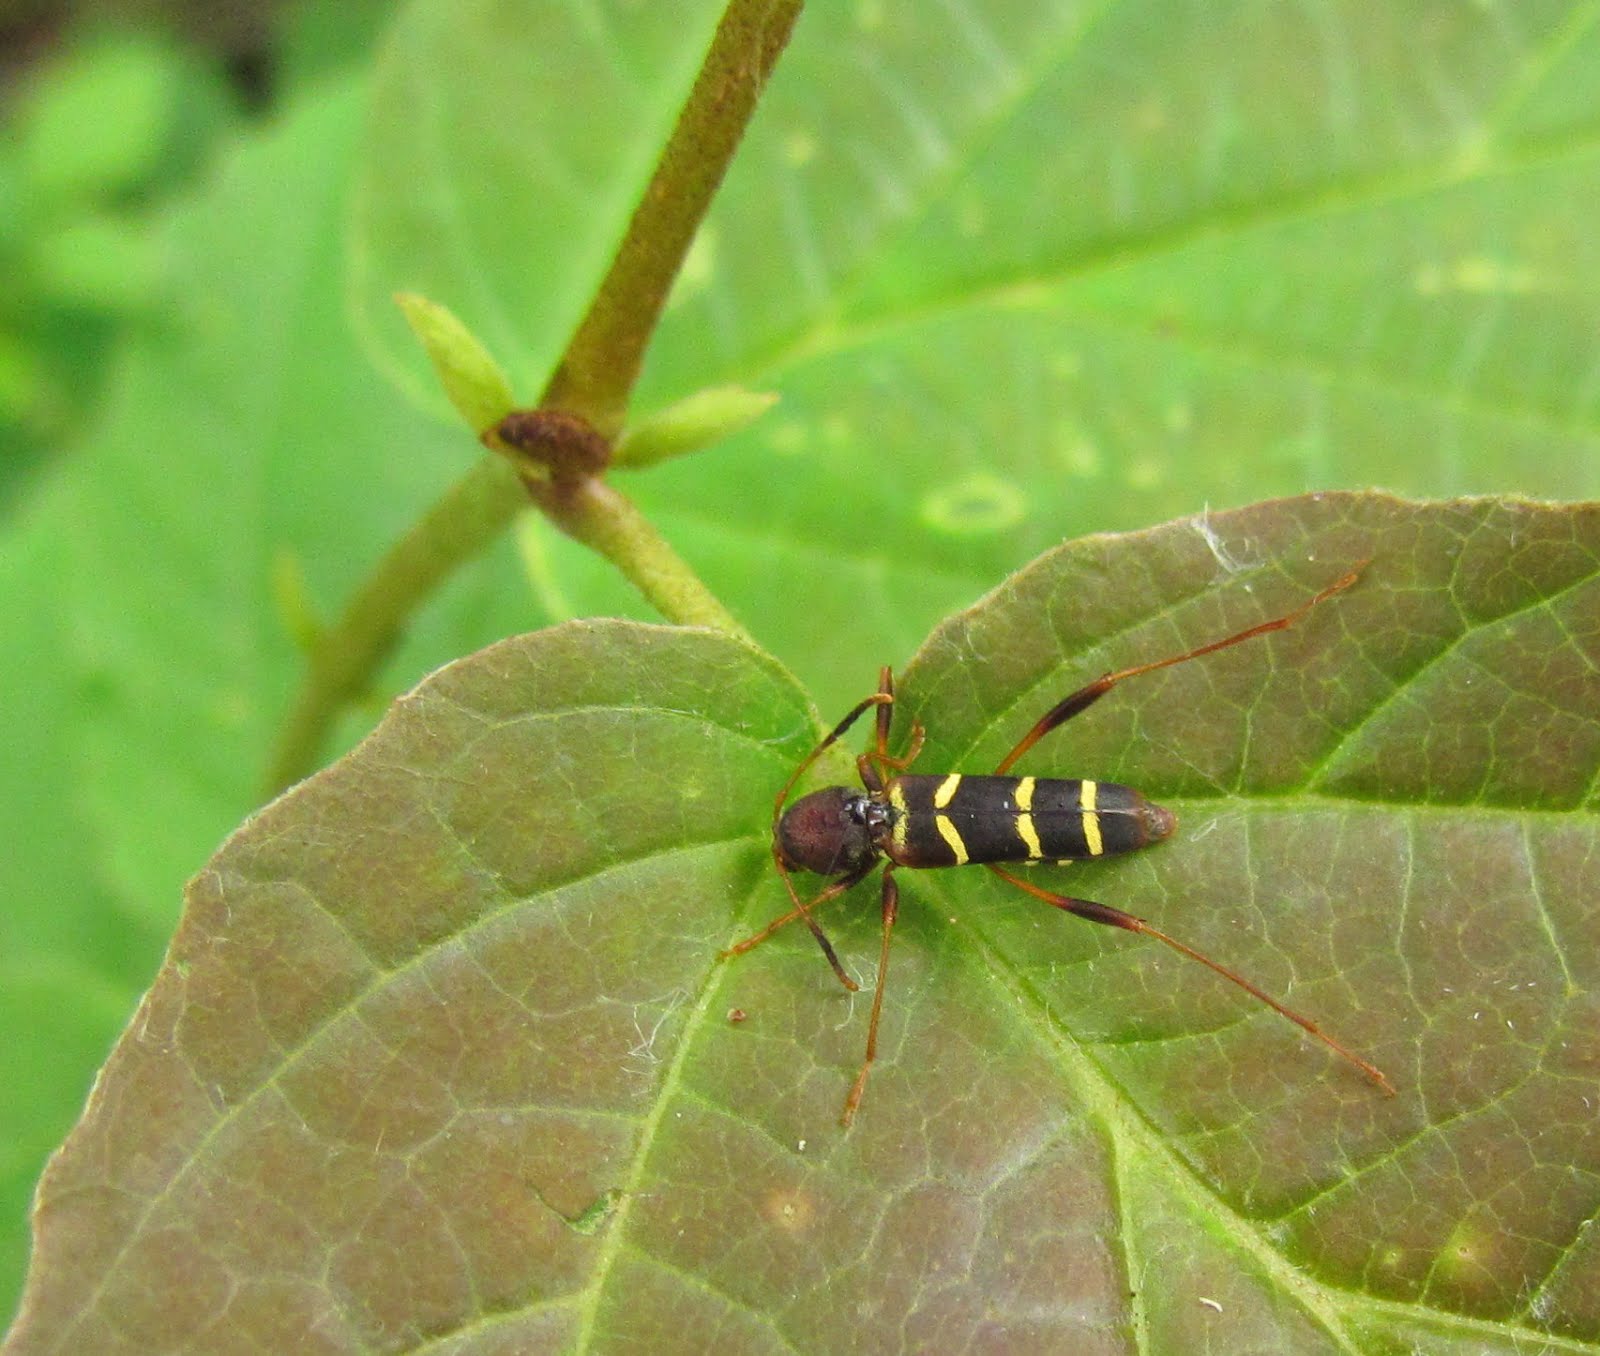 Cuckoo Wasps - Topics in Subtropics - ANR Blogs